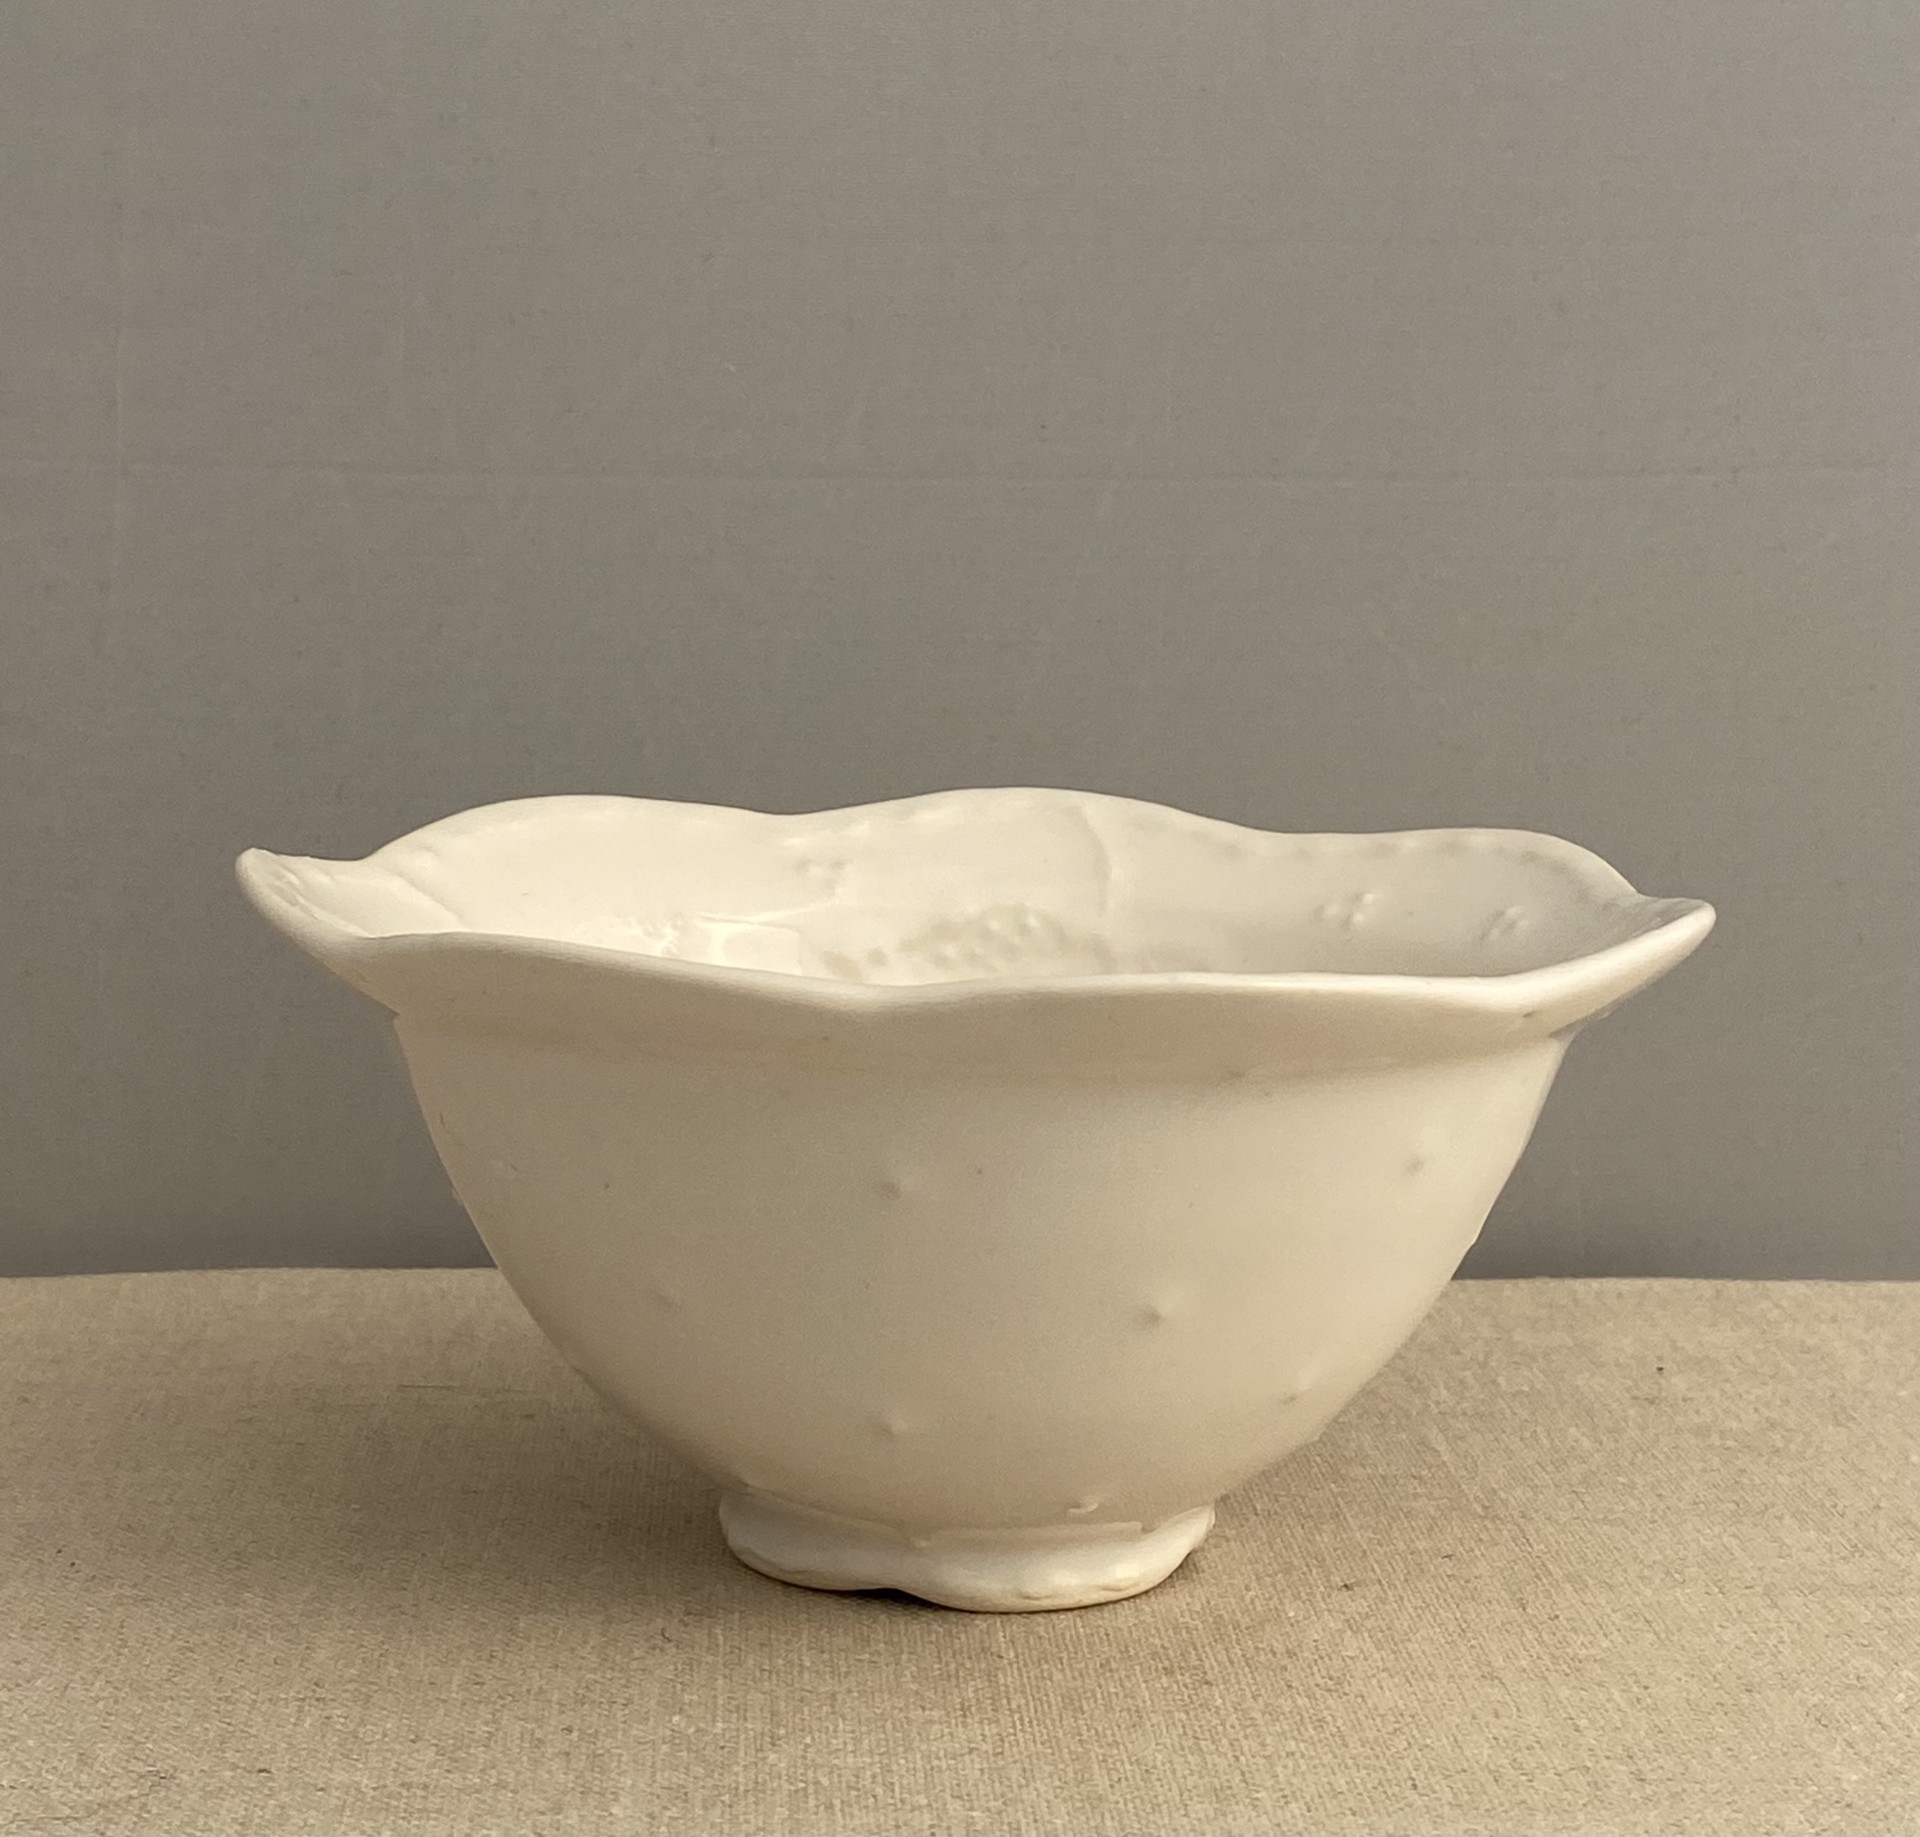 White Bowl #2 by Jenni Brant